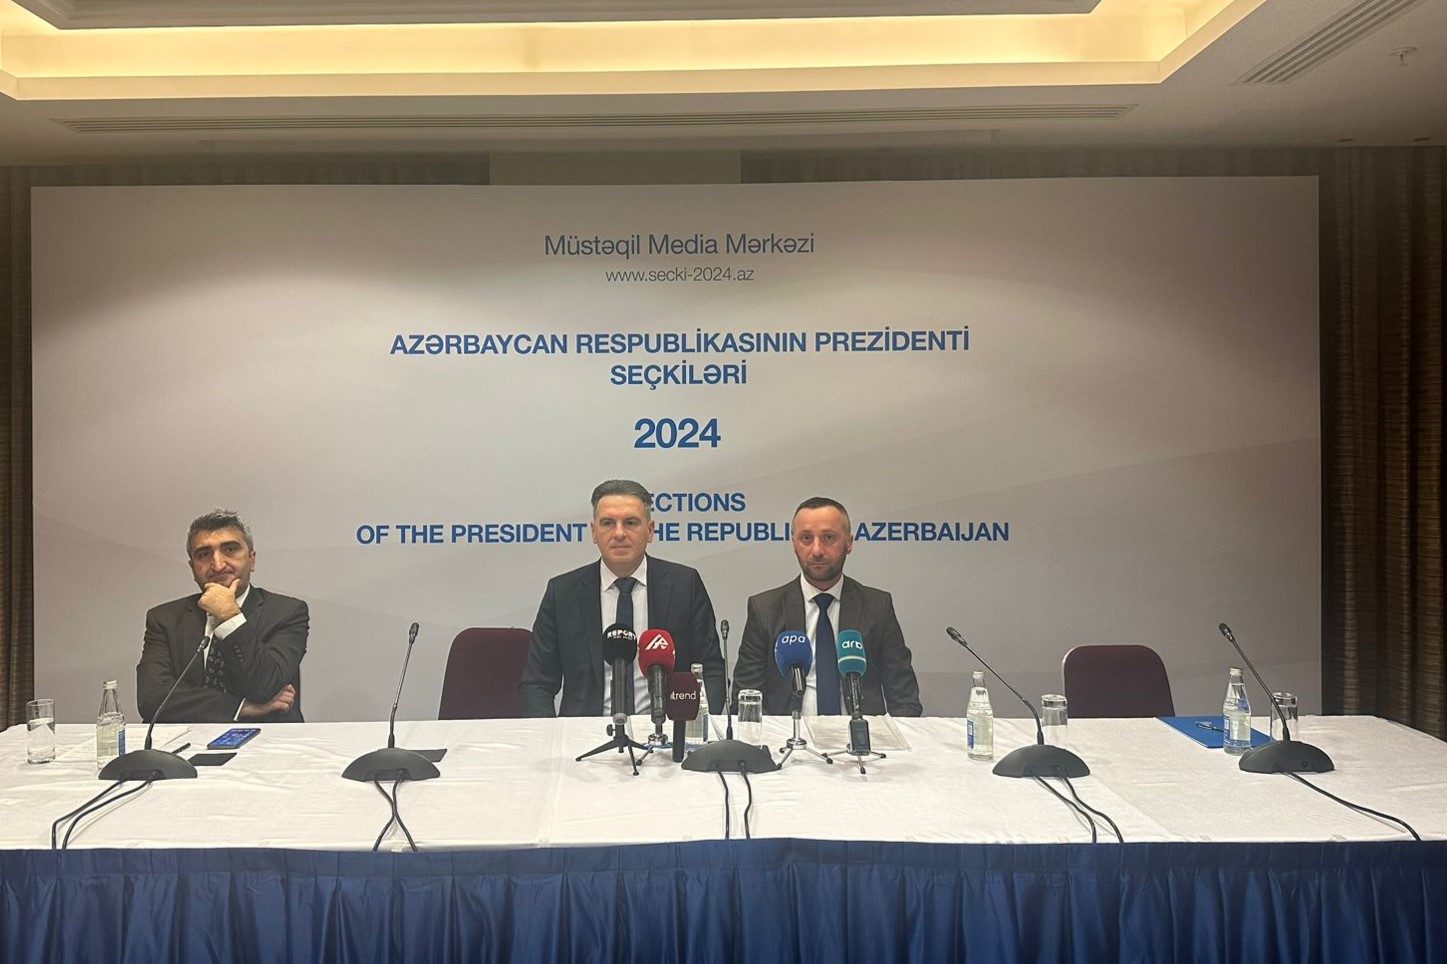 Delegat u Domu naroda Džemal Smajić i poslanik u Predstavničkom domu Milorad Kojić učestvovali u posmatračkoj misiji vanrednih predsjedničkih izbora u Republici Azerbejdžan